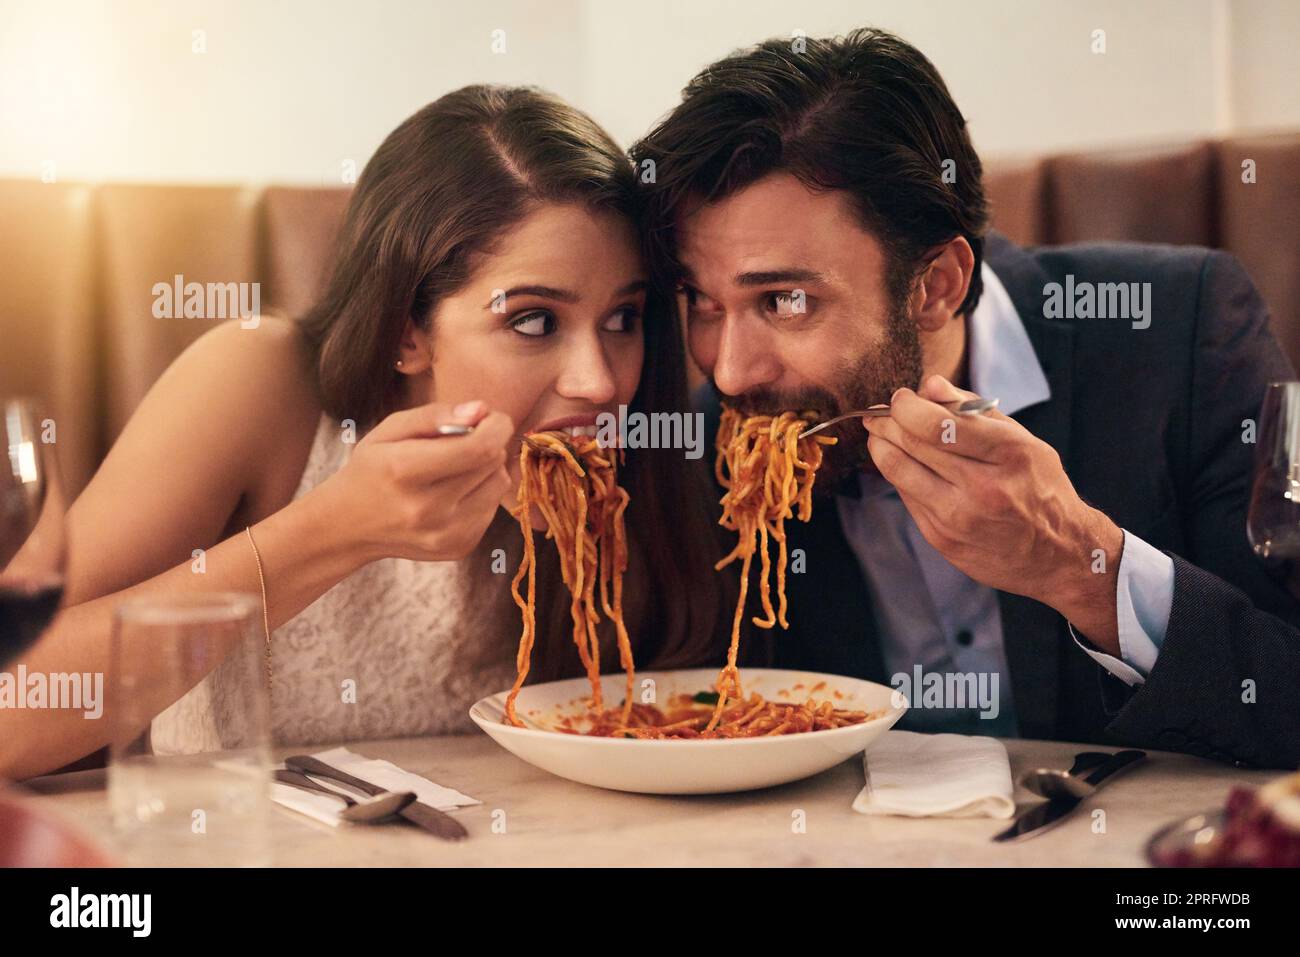 Una corsa al traguardo: Una giovane coppia che condivide un piatto di spaghetti durante una cena romantica in un ristorante. Foto Stock